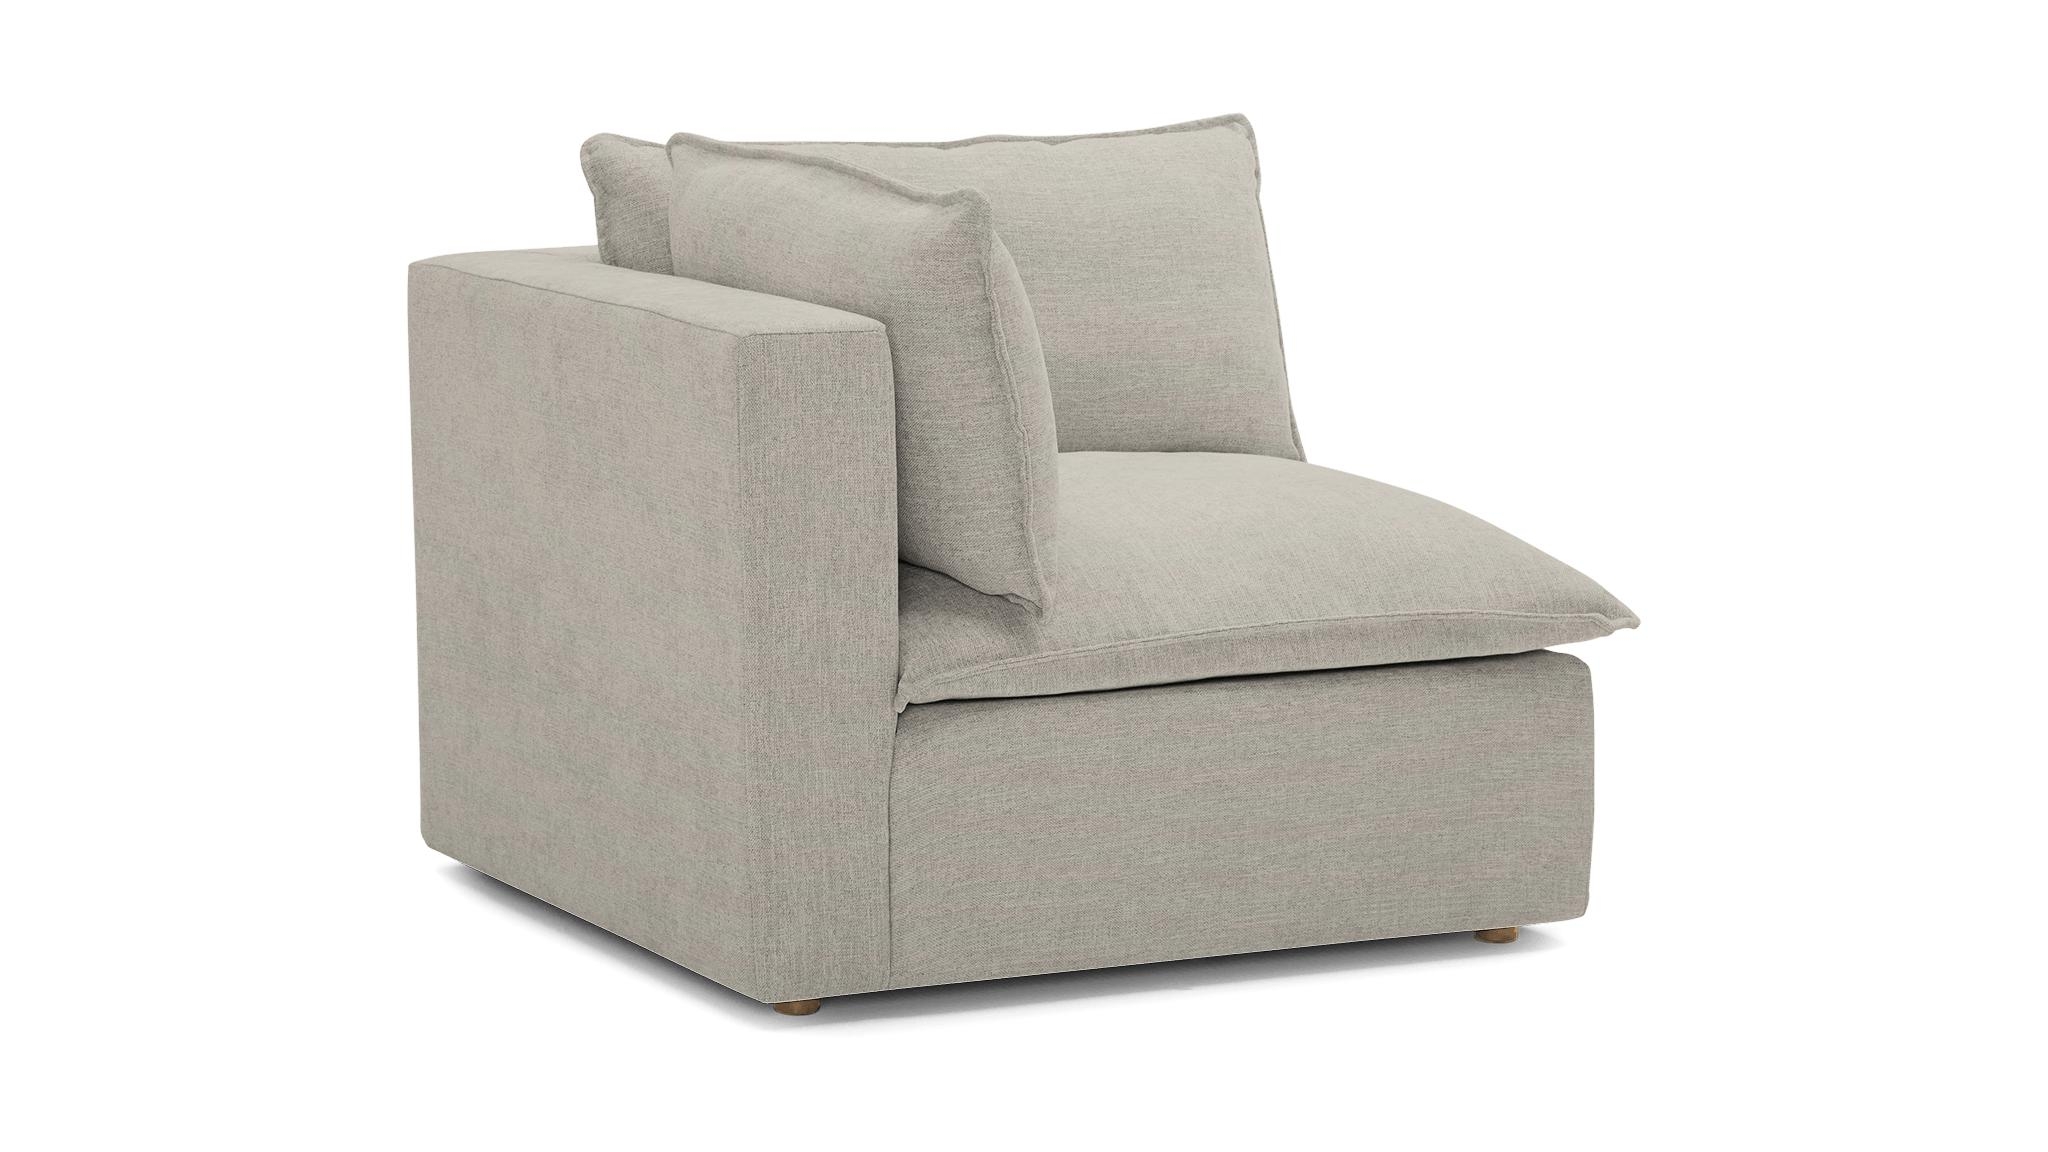 White Haine Mid Century Modern Corner Chair - Bloke Cotton - Image 1